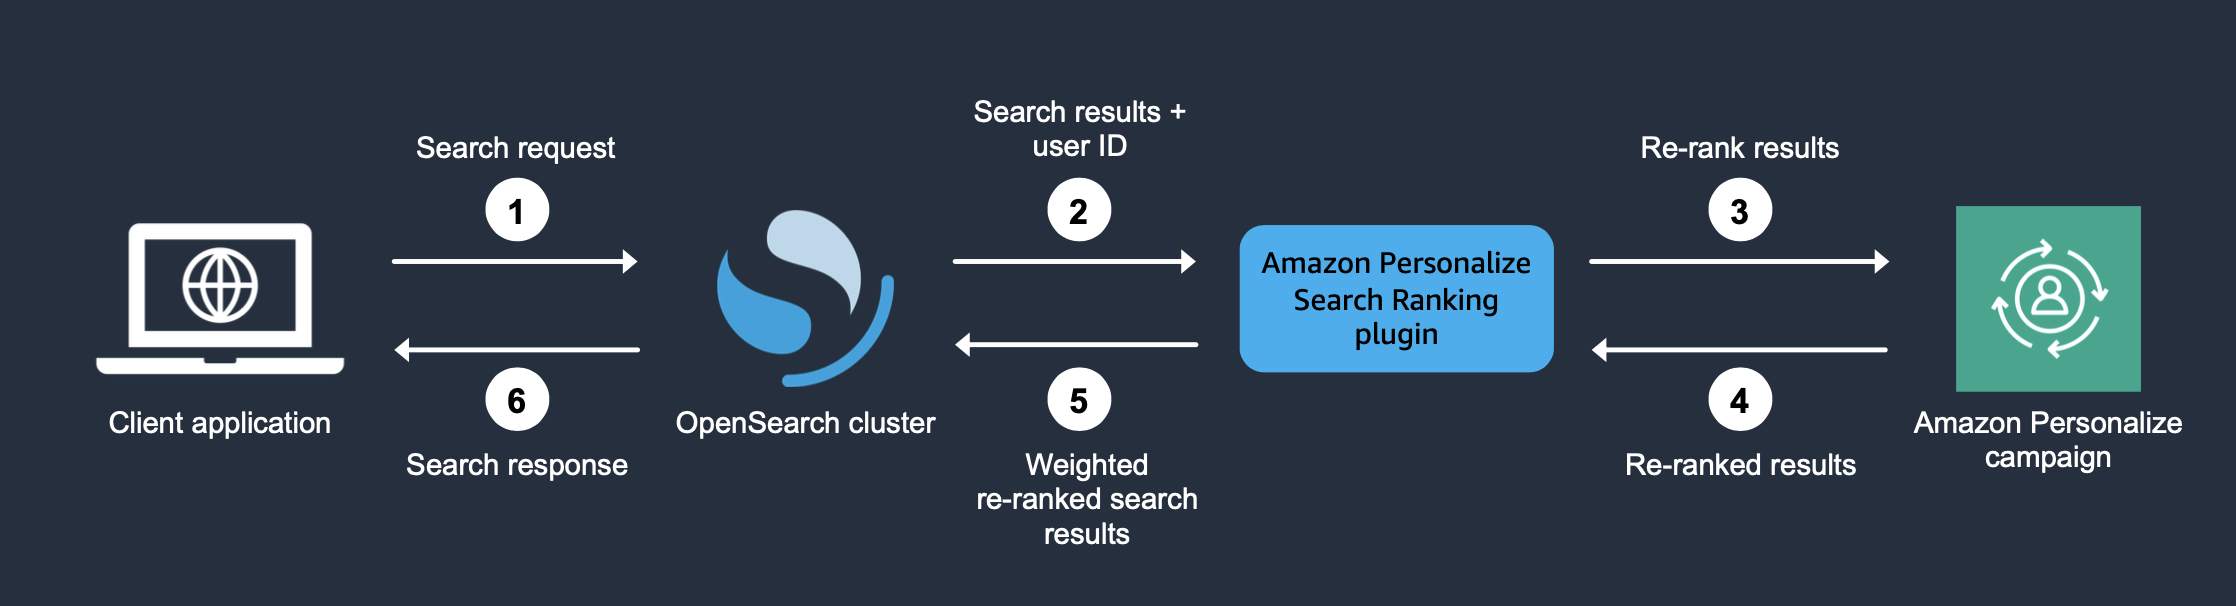 Illustra come funziona il plug-in quando lo usi per personalizzare i risultati. OpenSearch